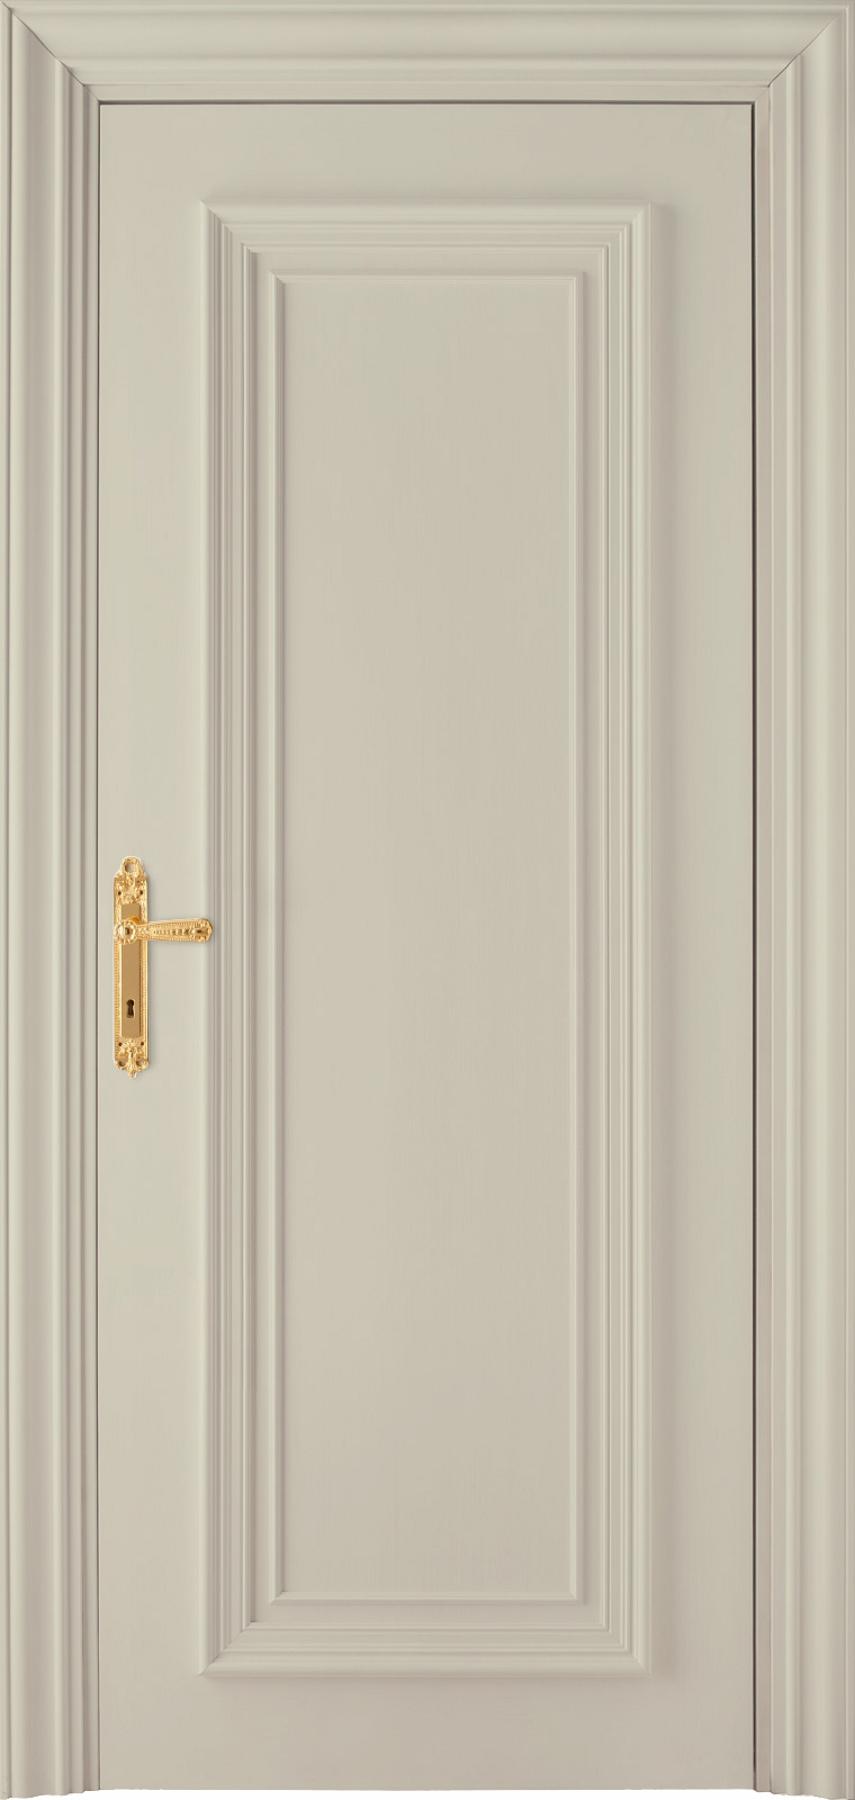 Главная прима. Дверь эмаль с фрезеровкой. Дверь межкомнатная эмаль коричневая. Межкомнатные двери из эмали. Дверь Прима белый бархат.